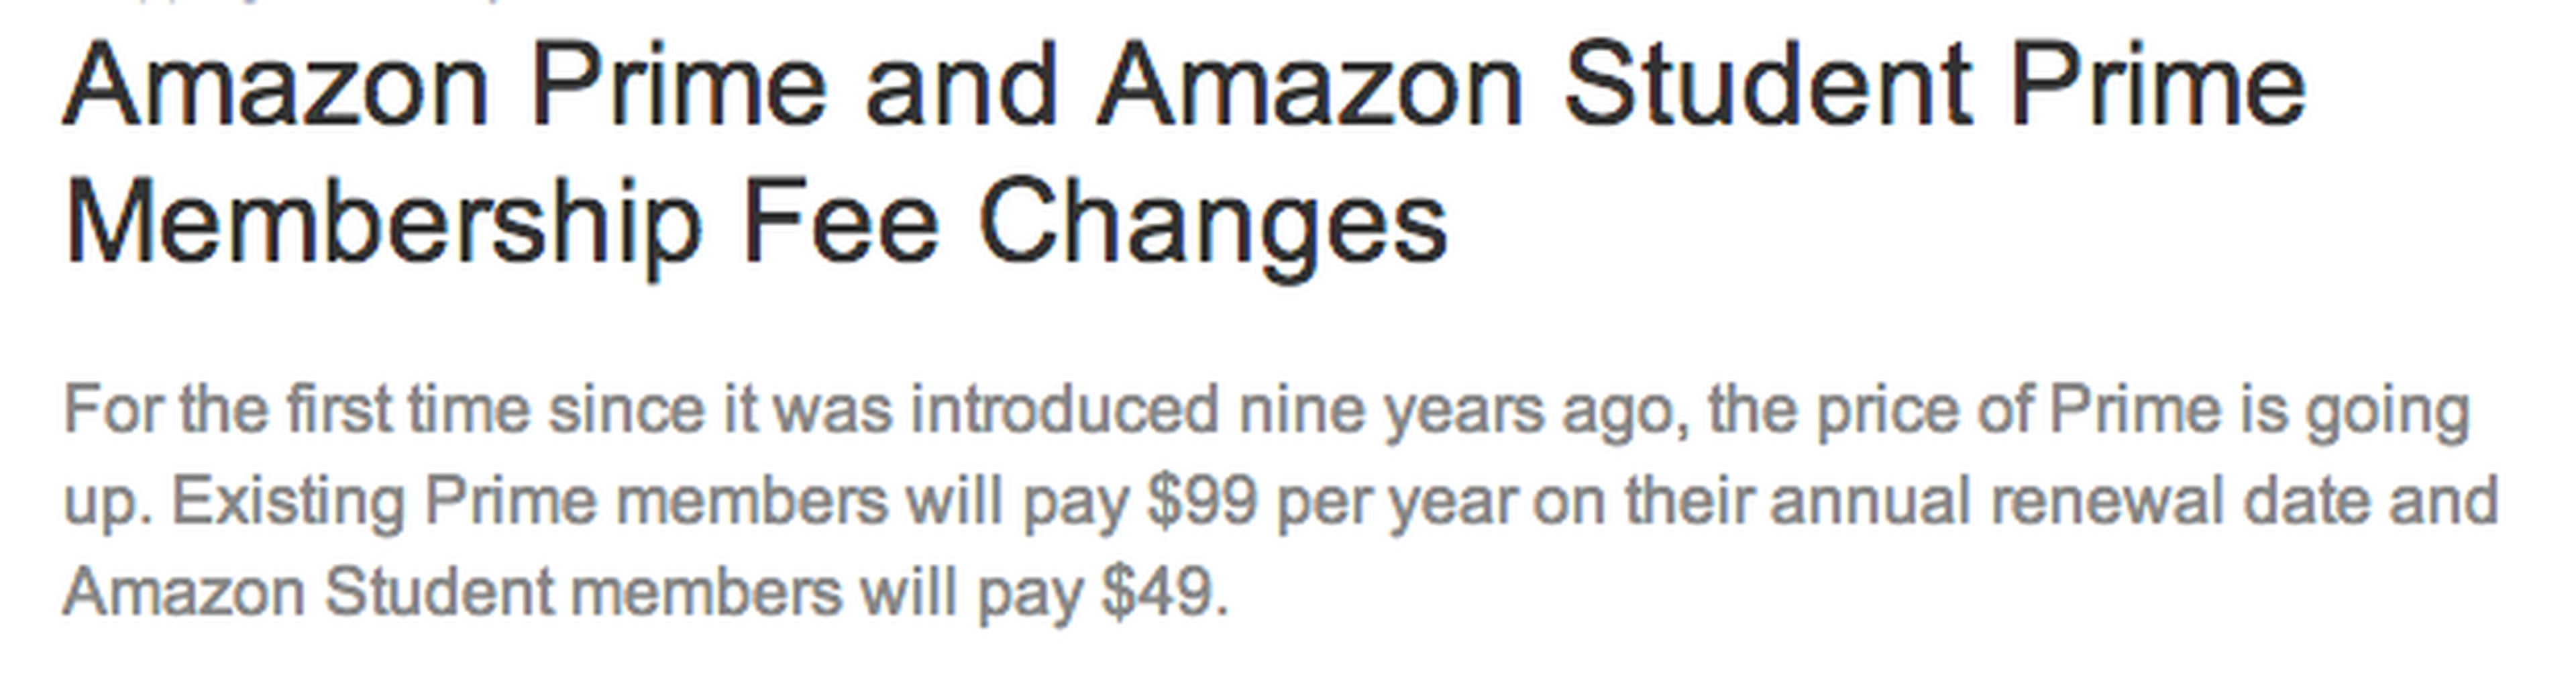 Amazon Prime aumenta su precio en 20 dólares a partir de abril